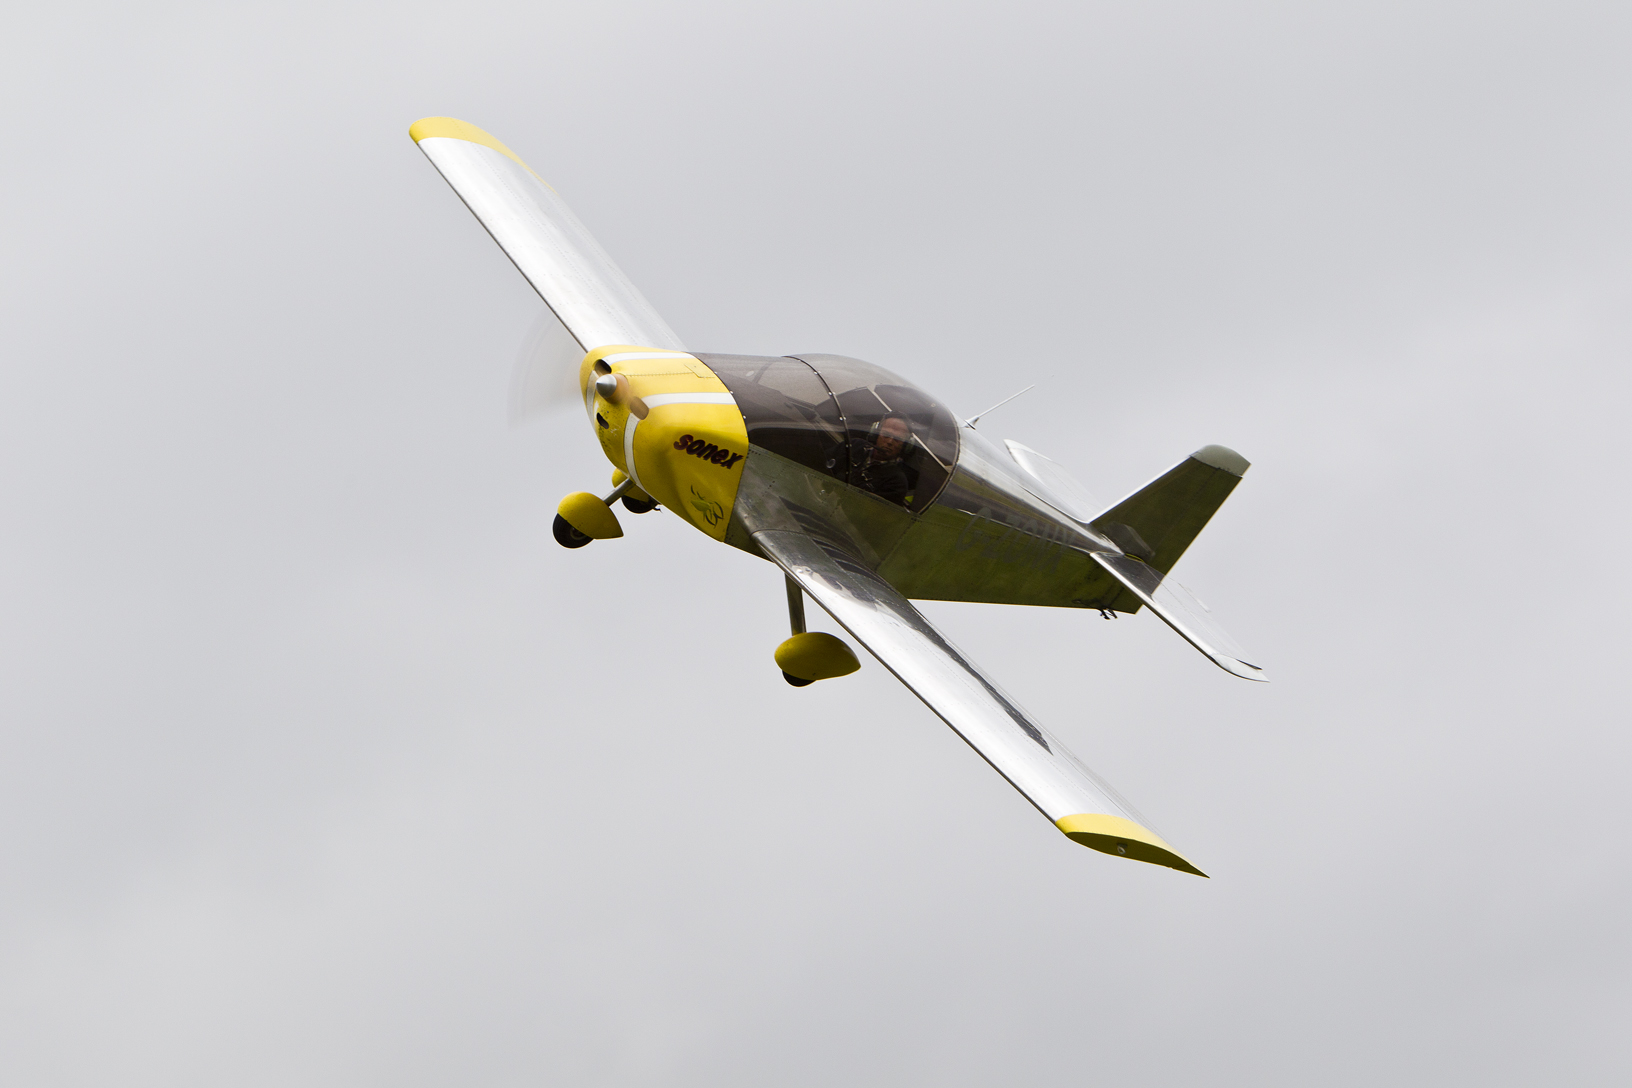 Aerobatic Sonex